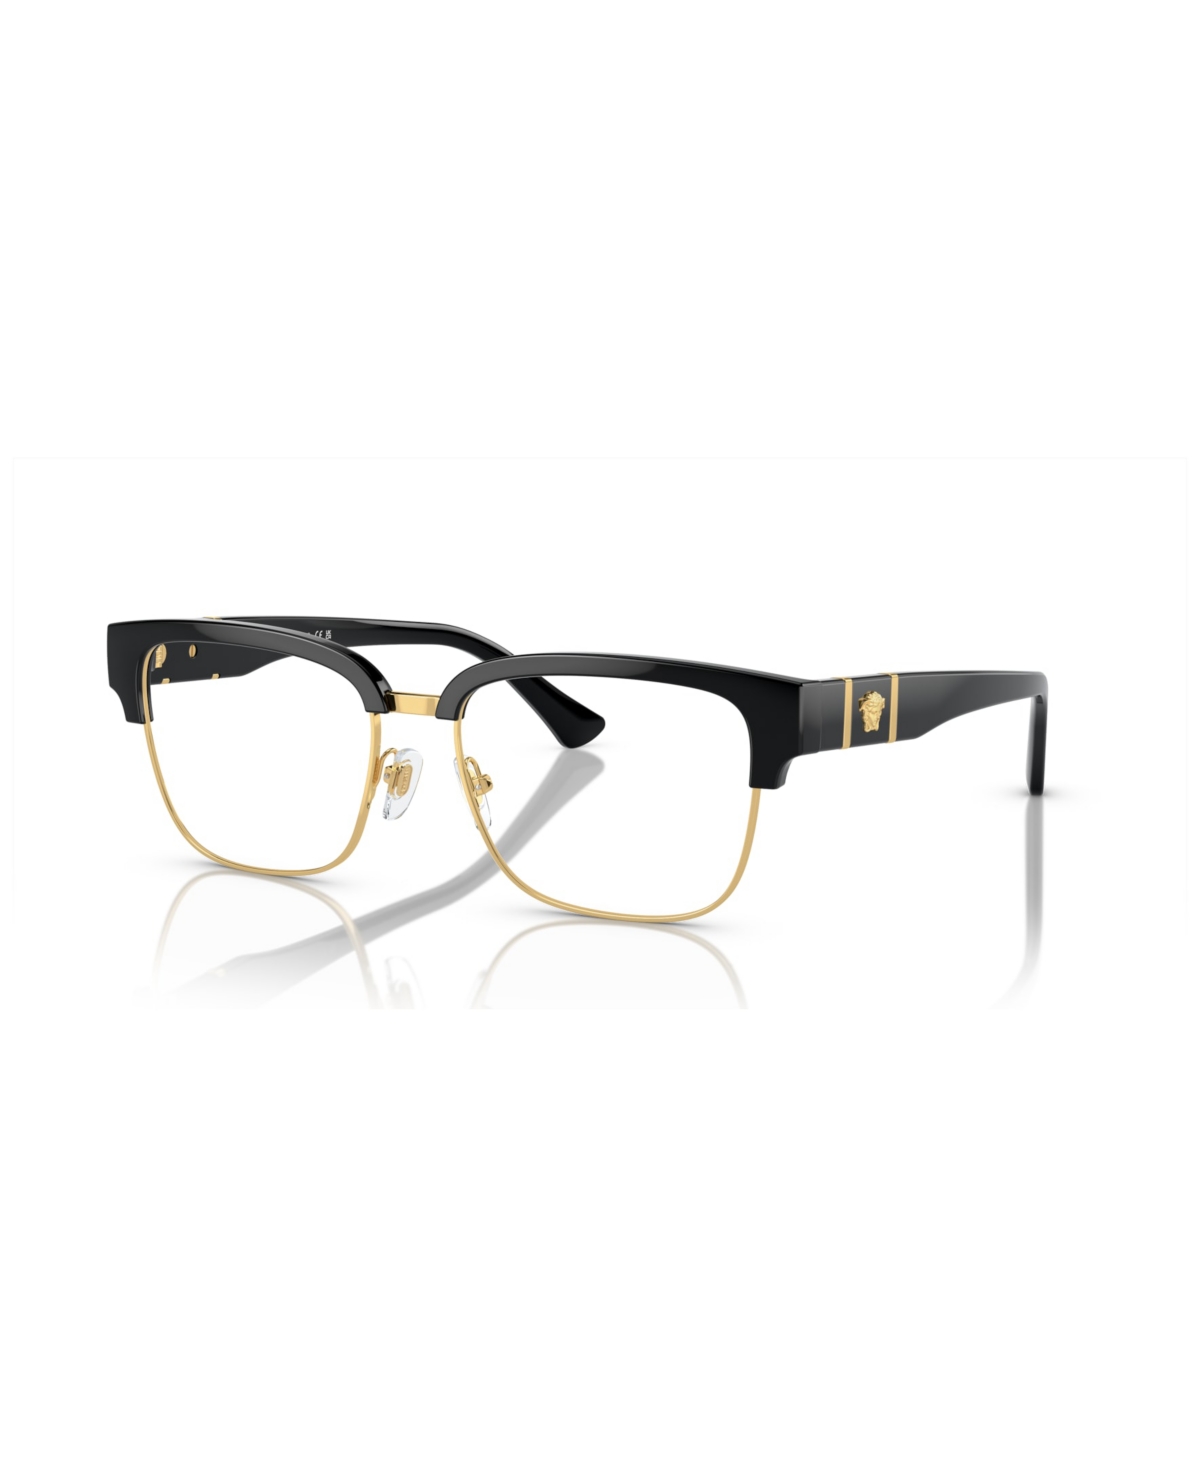 Men's Eyeglasses, VE3348 - Black